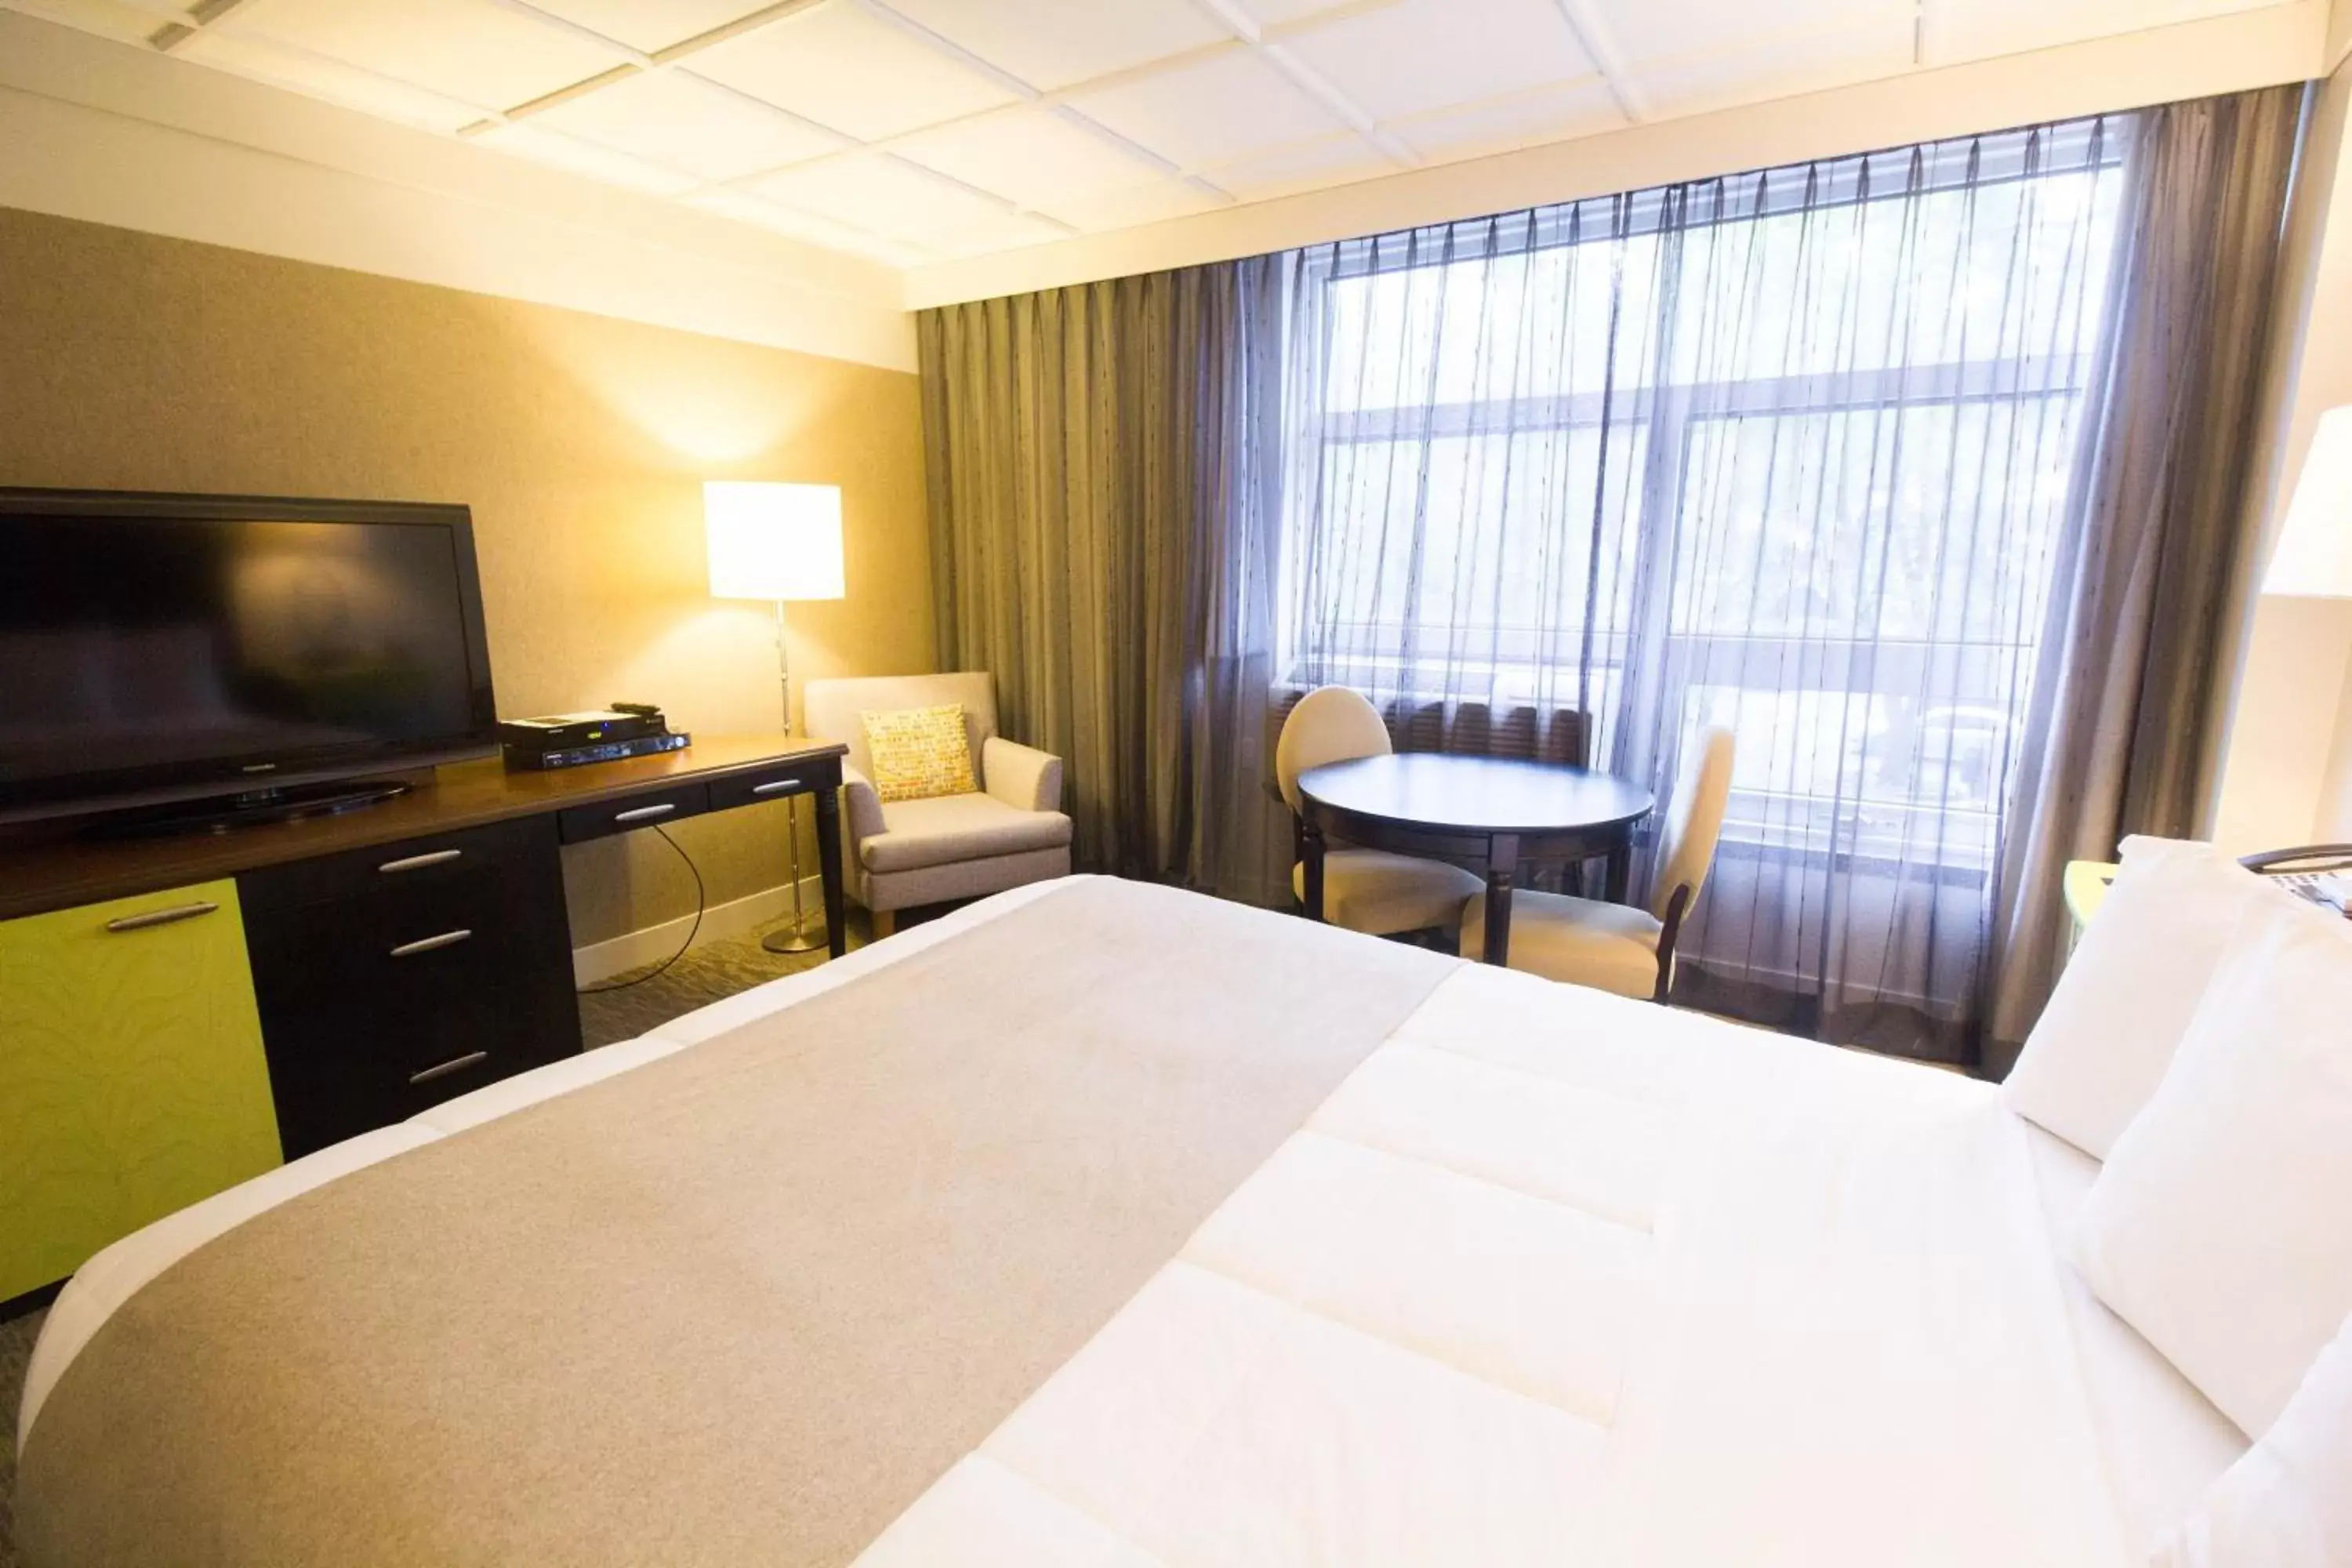 Bedroom, TV/Entertainment Center in Hotel Champlain